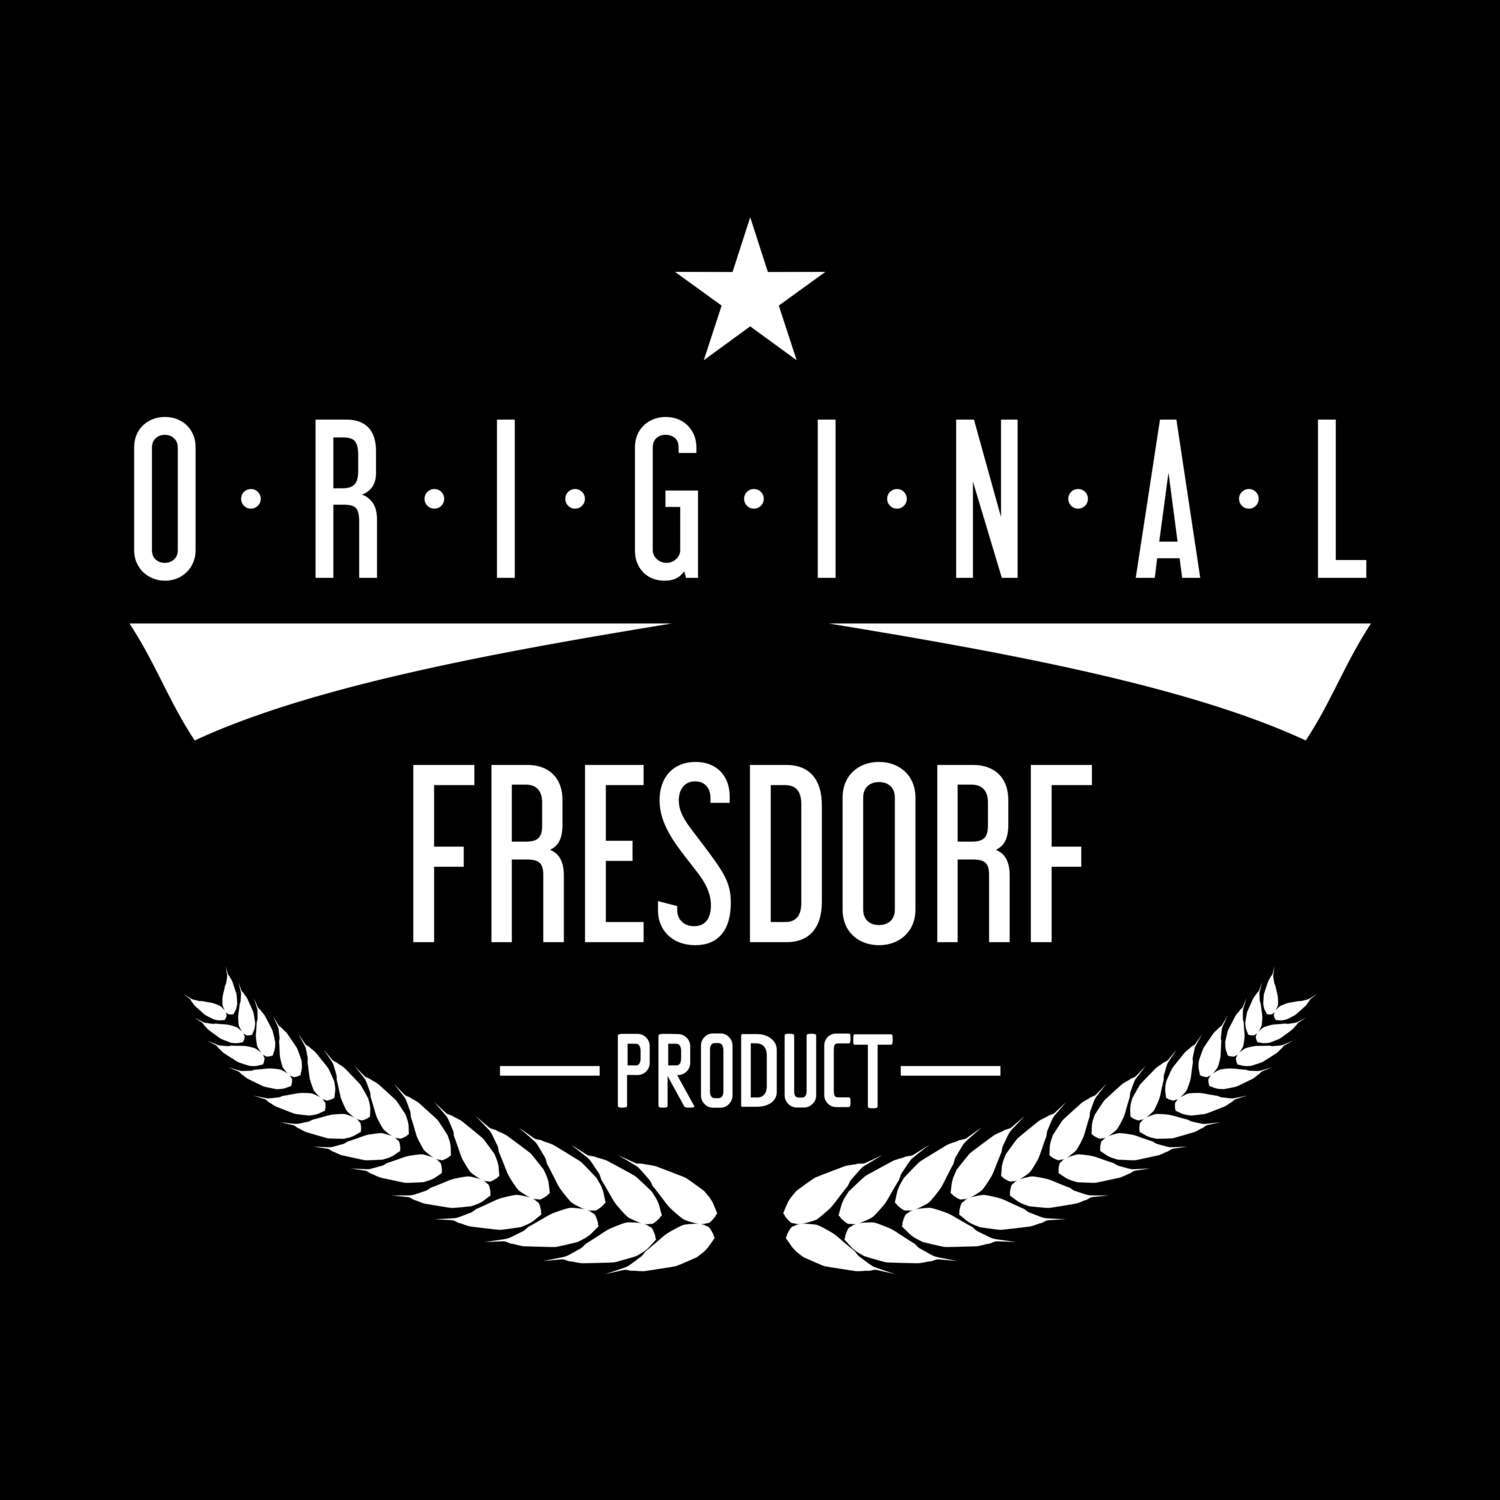 Fresdorf T-Shirt »Original Product«